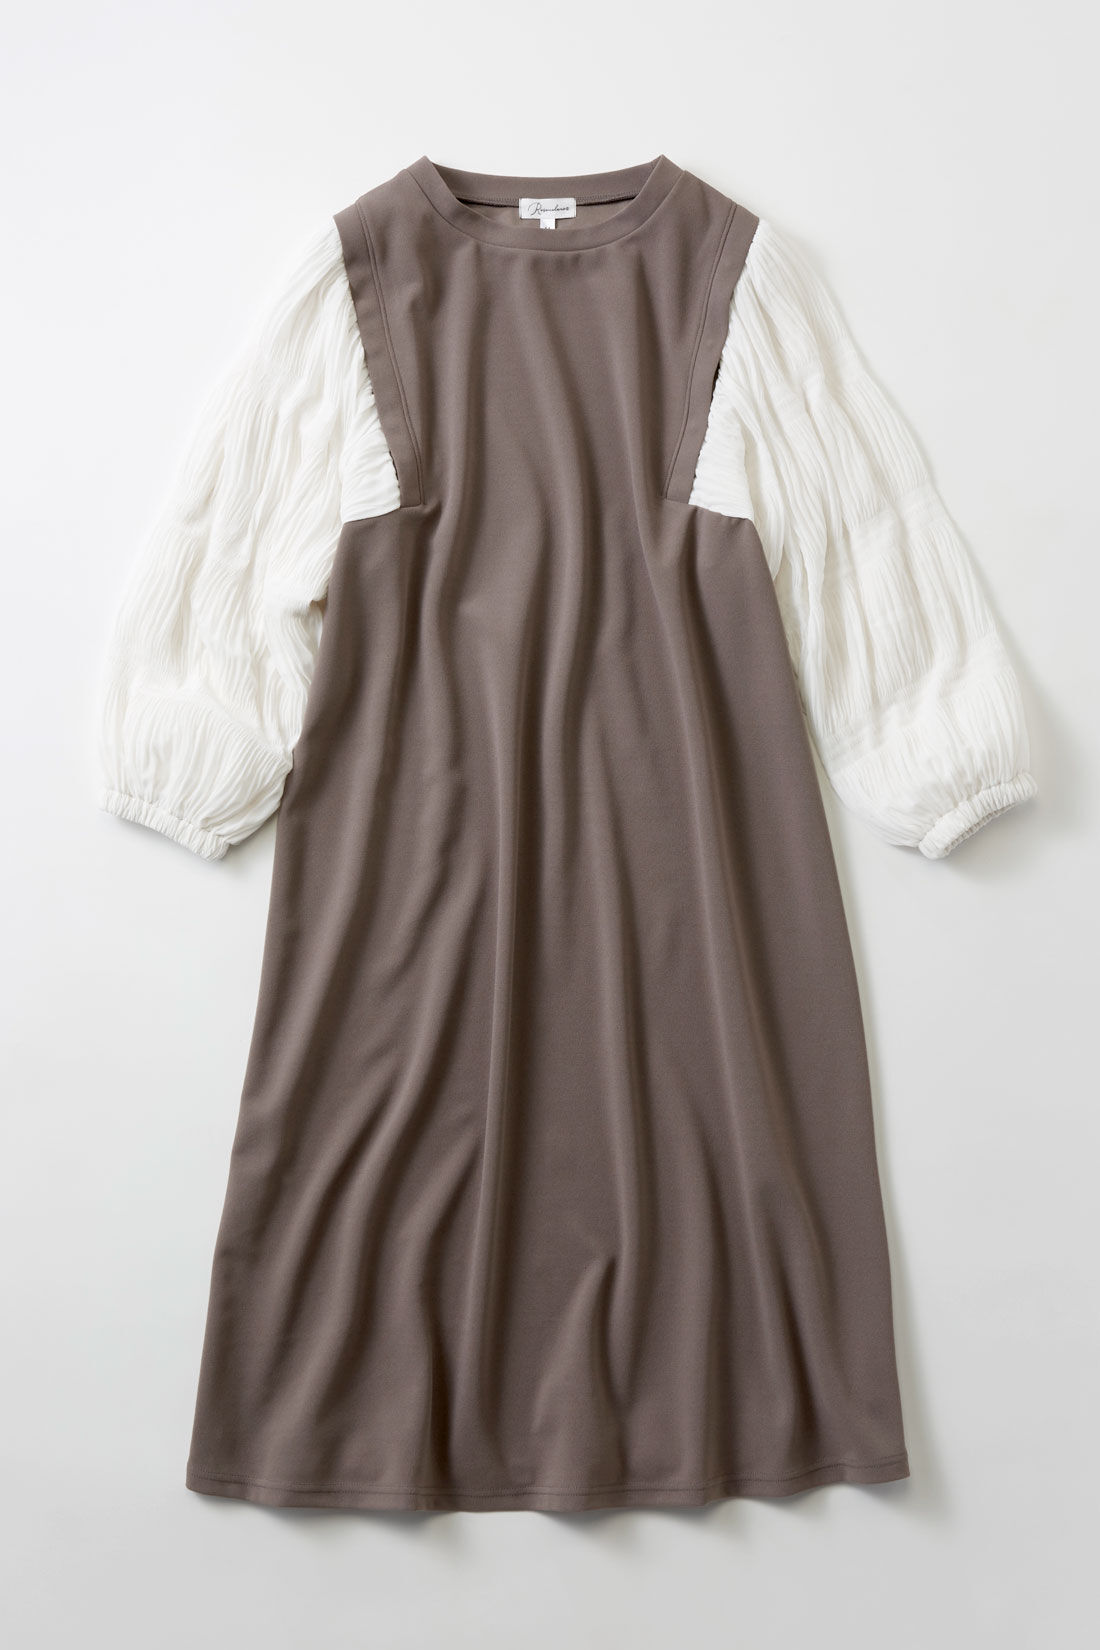 フェリシモMama|［Mama select］マタニティ・産後使える　授乳しやすい　袖シャーリング素材ワンピース〈モカ〉|ブラウスにジャンパースカートを重ね着したような、切り替えデザインのワンピース。